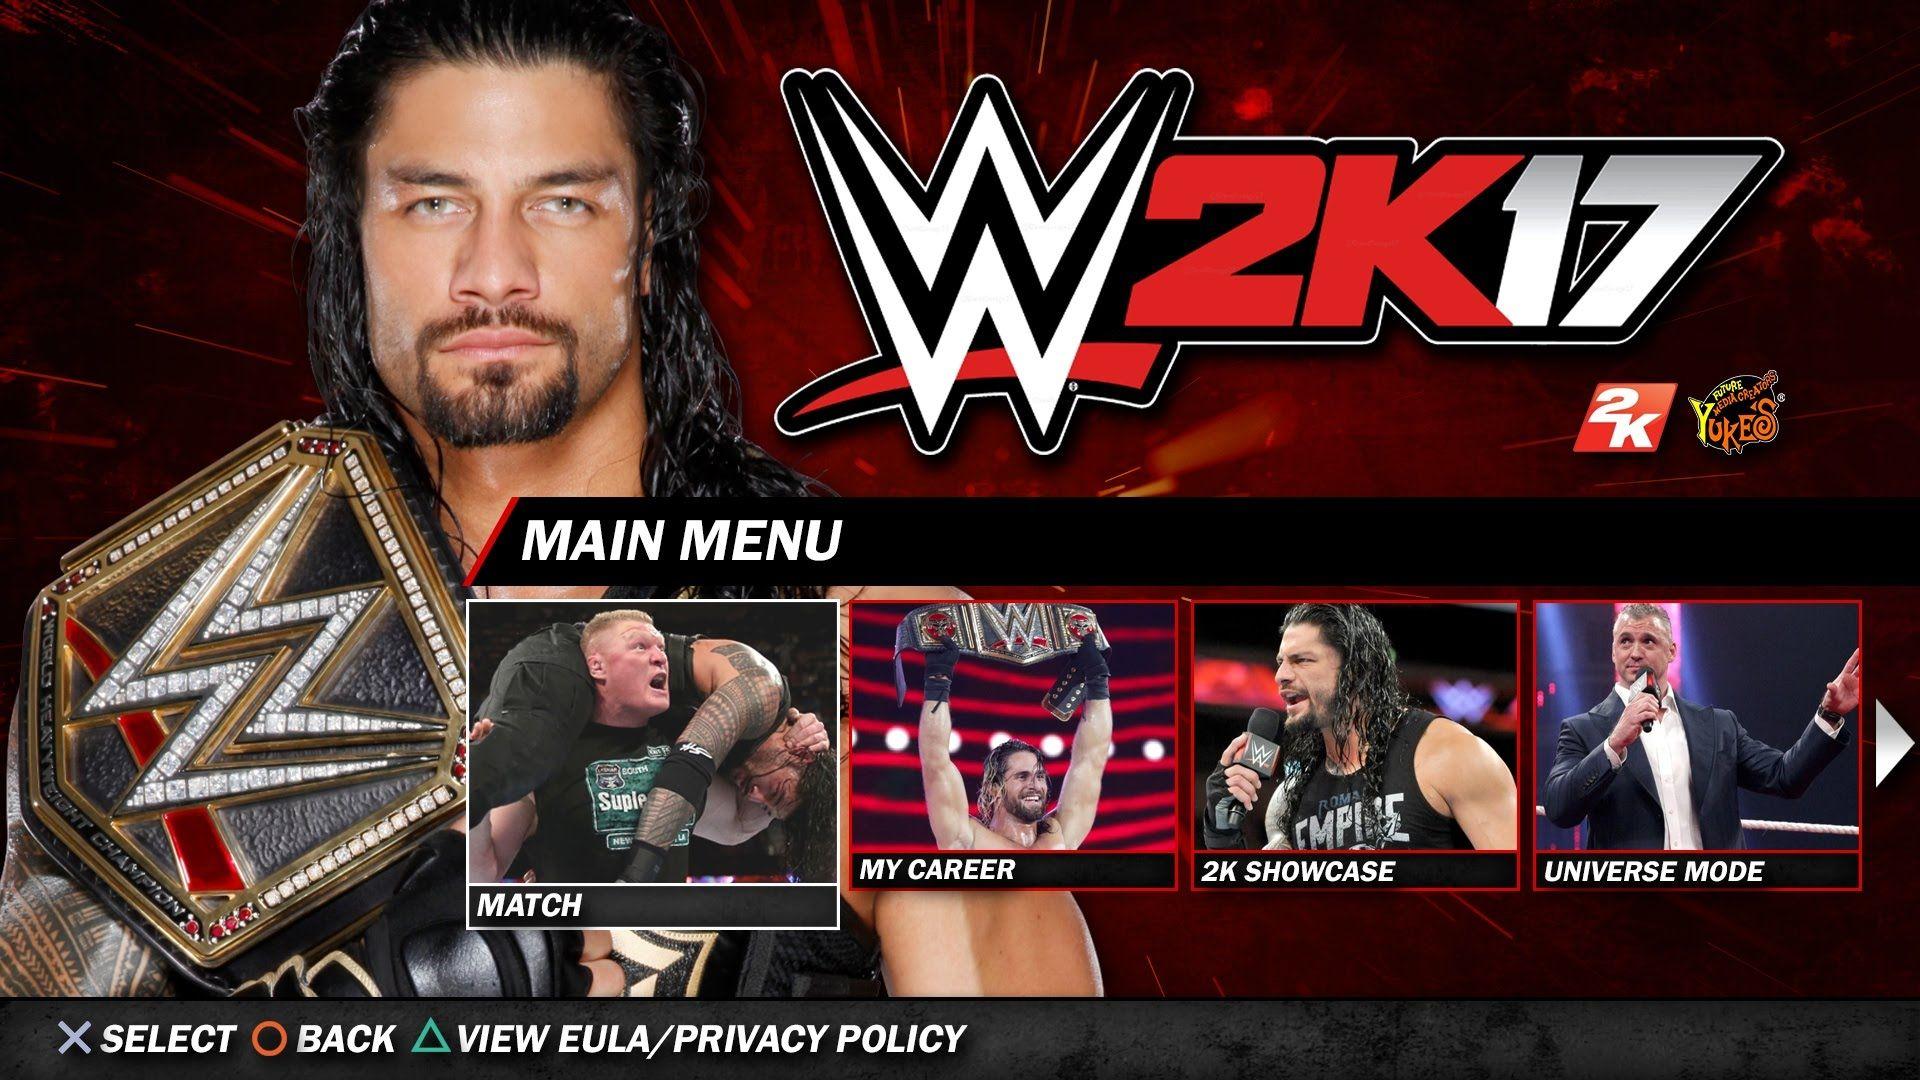 WWE 2k17 HD Wallpaper